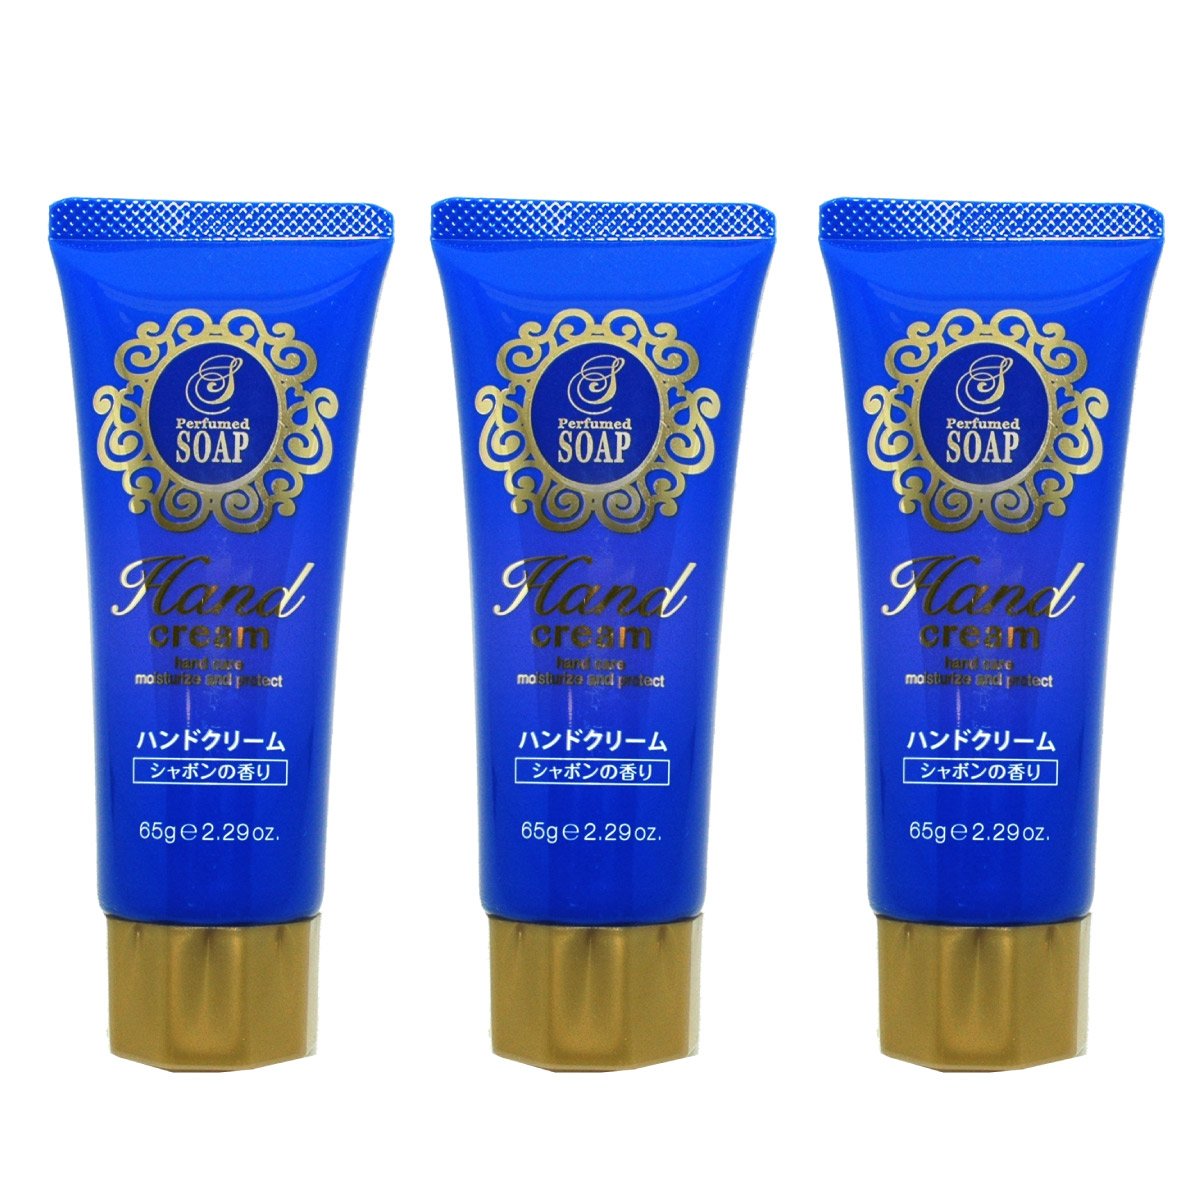 16位：香りのハンドクリーム ジェルタイプ シャボンの香り×3個セット 日本製 シアバター ヒアルロン酸配合